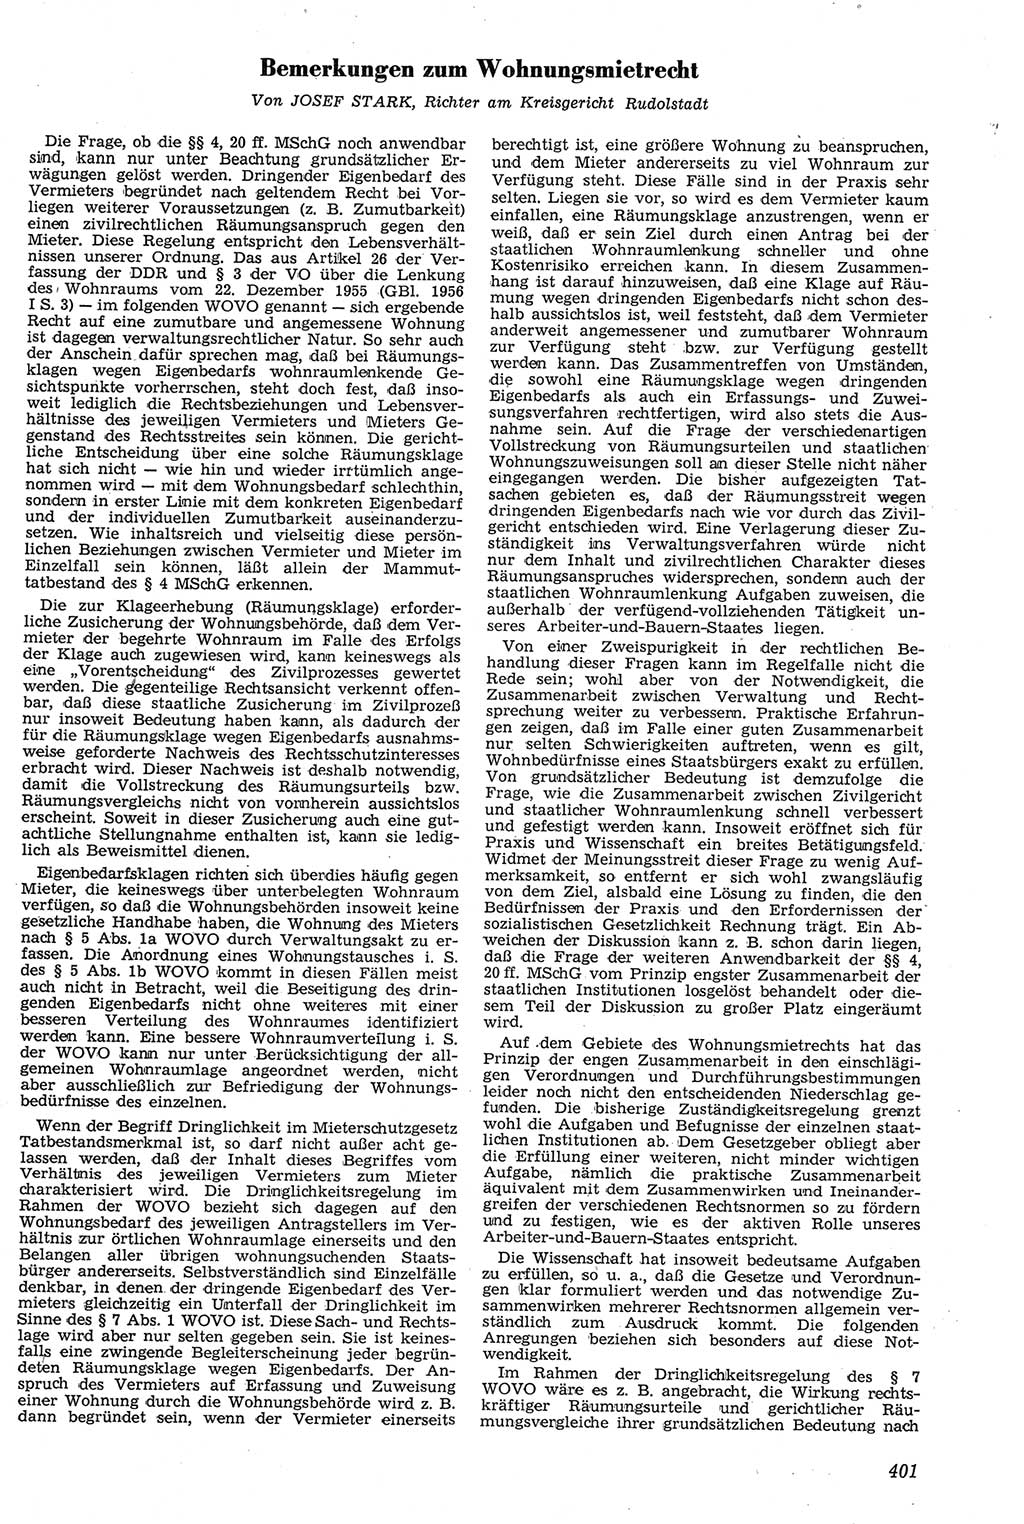 Neue Justiz (NJ), Zeitschrift für Recht und Rechtswissenschaft [Deutsche Demokratische Republik (DDR)], 11. Jahrgang 1957, Seite 401 (NJ DDR 1957, S. 401)